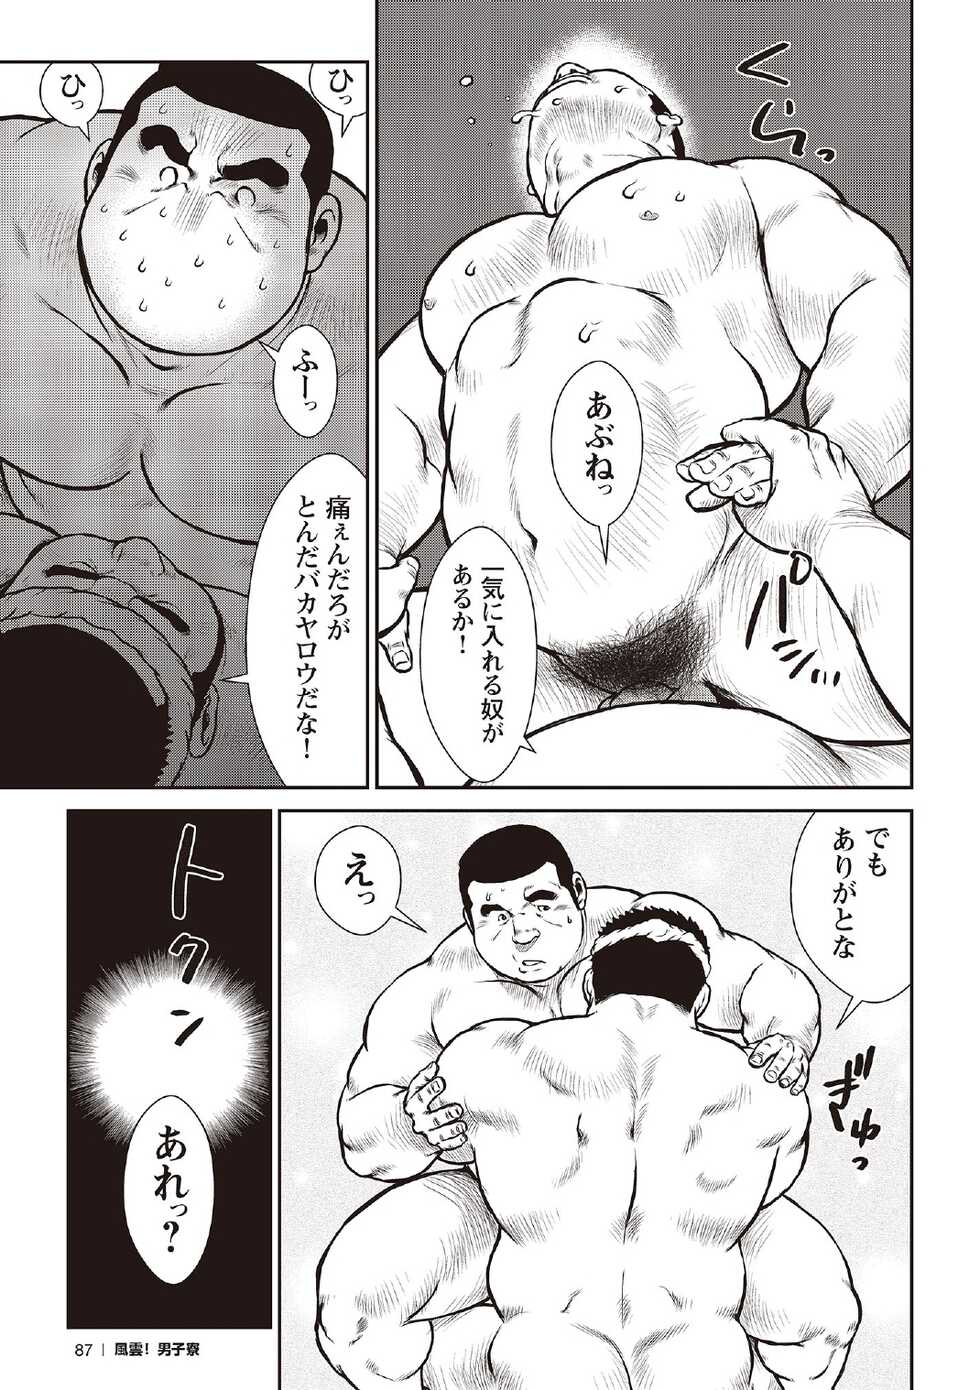 [Ebisubashi Seizou] Ebisubashi Seizou Tanpen Manga Shuu 2 Fuuun! Danshi Ryou [Bunsatsuban] PART 3 Bousou Hantou Taifuu Zensen Ch. 3 ~ Ch. 5 [Digital] - Page 17